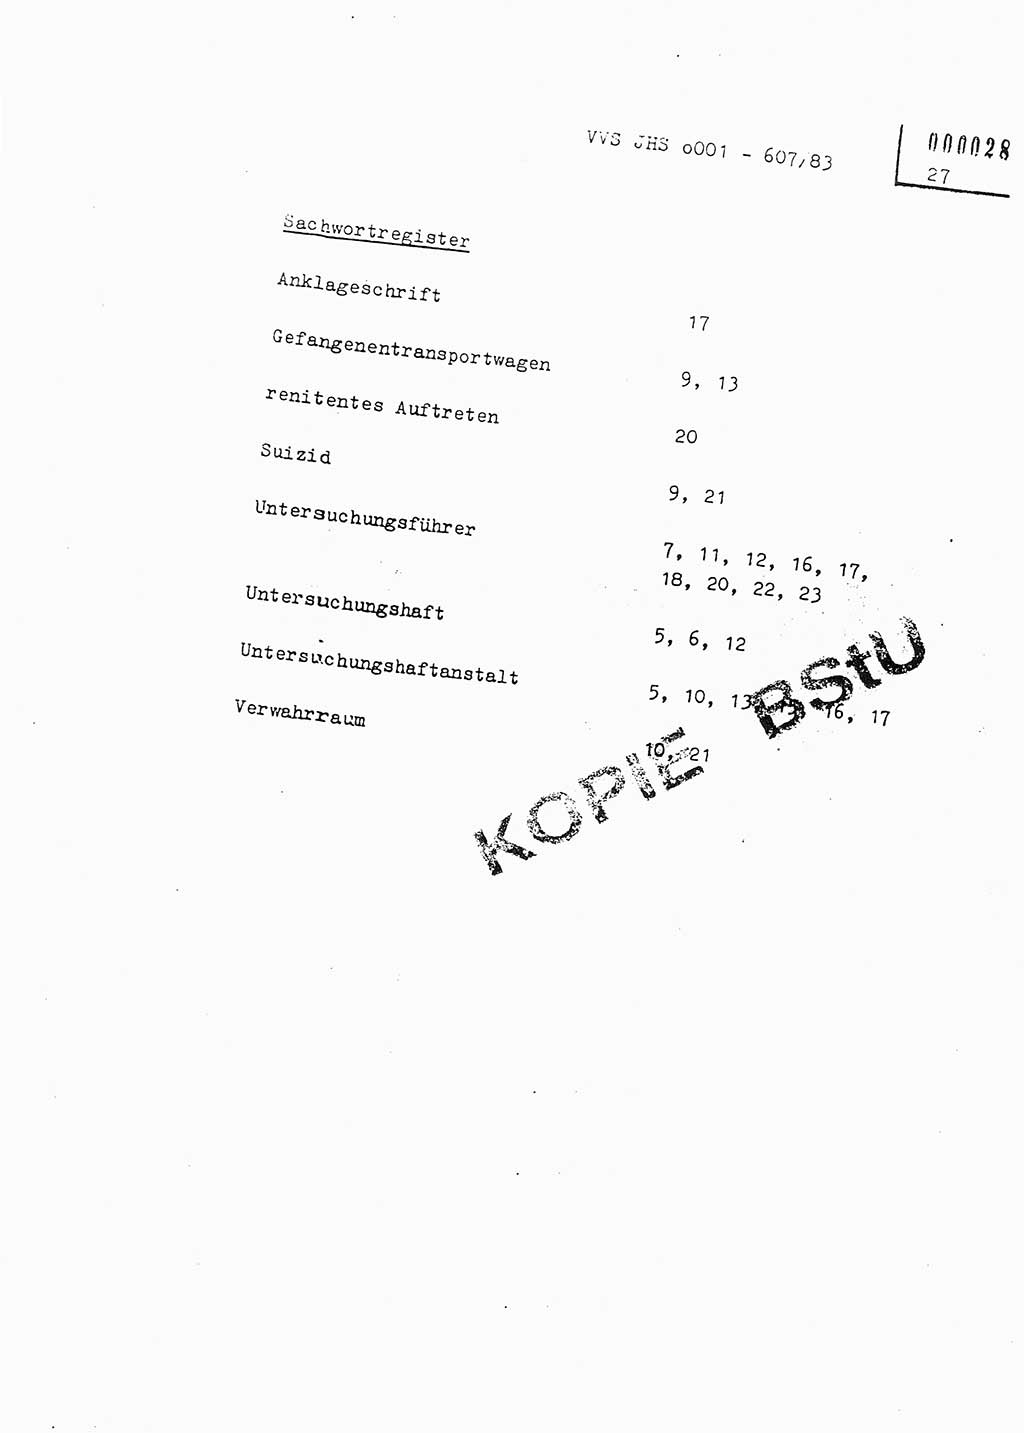 Fachschulabschlußarbeit Oberleutnant Hans-Joachim Saltmann (BV Rostock Abt. ⅩⅣ), Ministerium für Staatssicherheit (MfS) [Deutsche Demokratische Republik (DDR)], Juristische Hochschule (JHS), Vertrauliche Verschlußsache (VVS) o001-607/83, Potsdam 1983, Seite 27 (FS-Abschl.-Arb. MfS DDR JHS VVS o001-607/83 1983, S. 27)